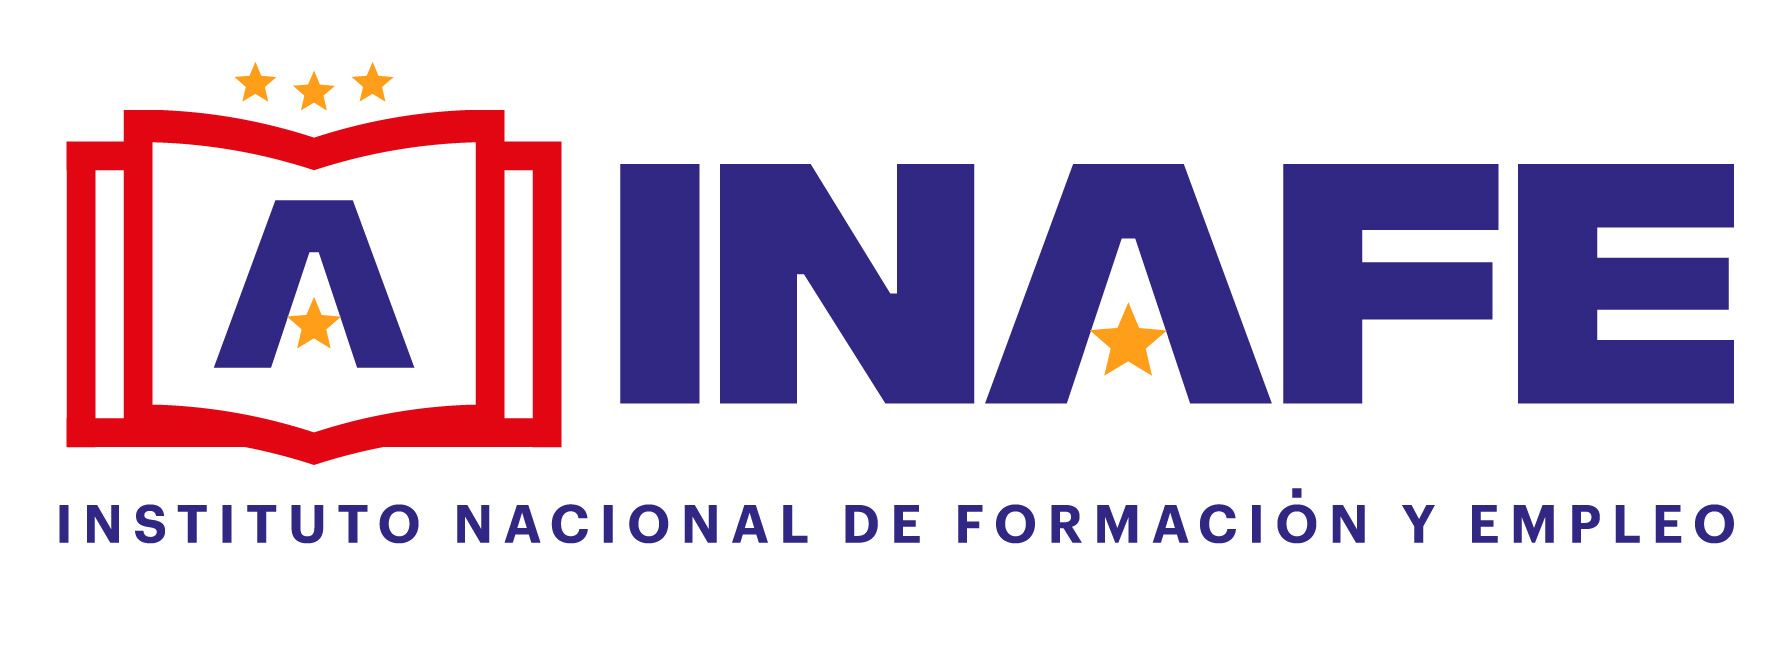 INAFE - Instituto Nacional de Formación y Empleo